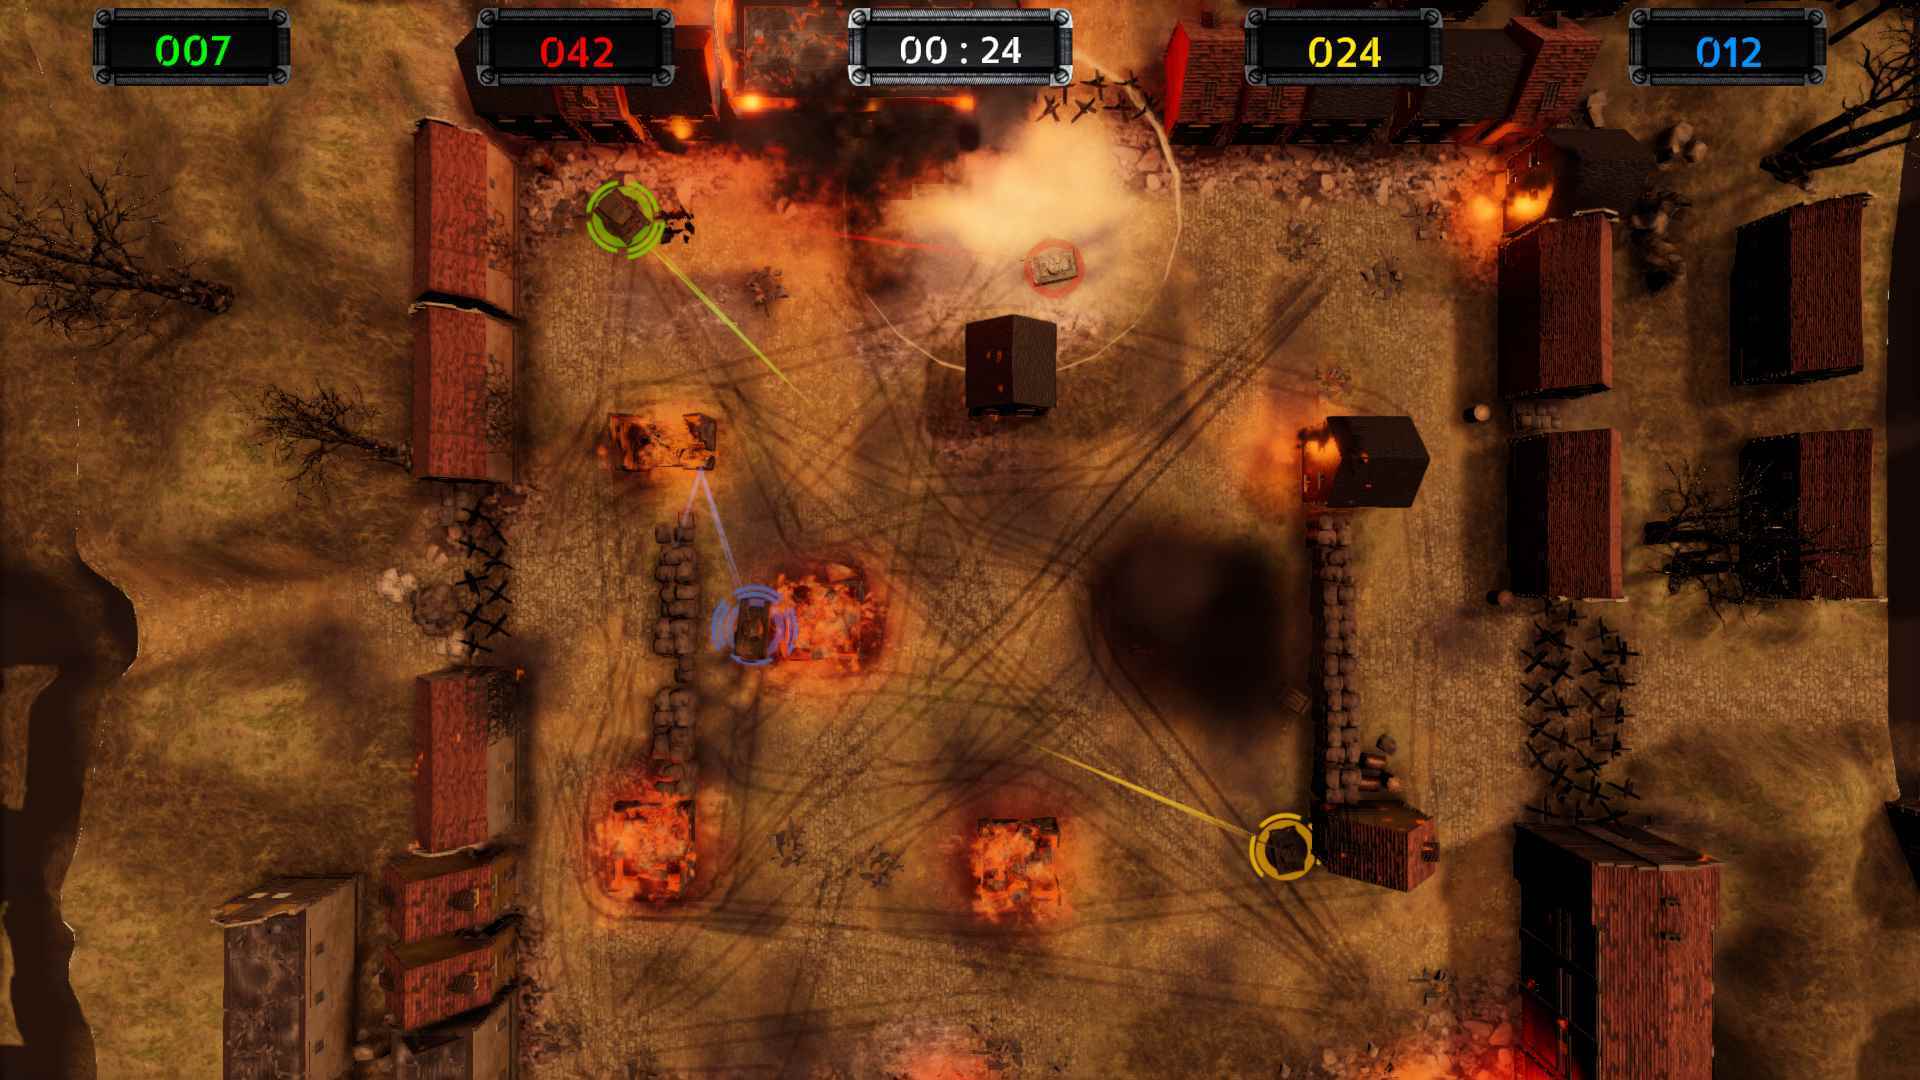 Dört tankın çarpışmasını gösteren bir Armor of Heroes karşılaşmasının ekran görüntüsü